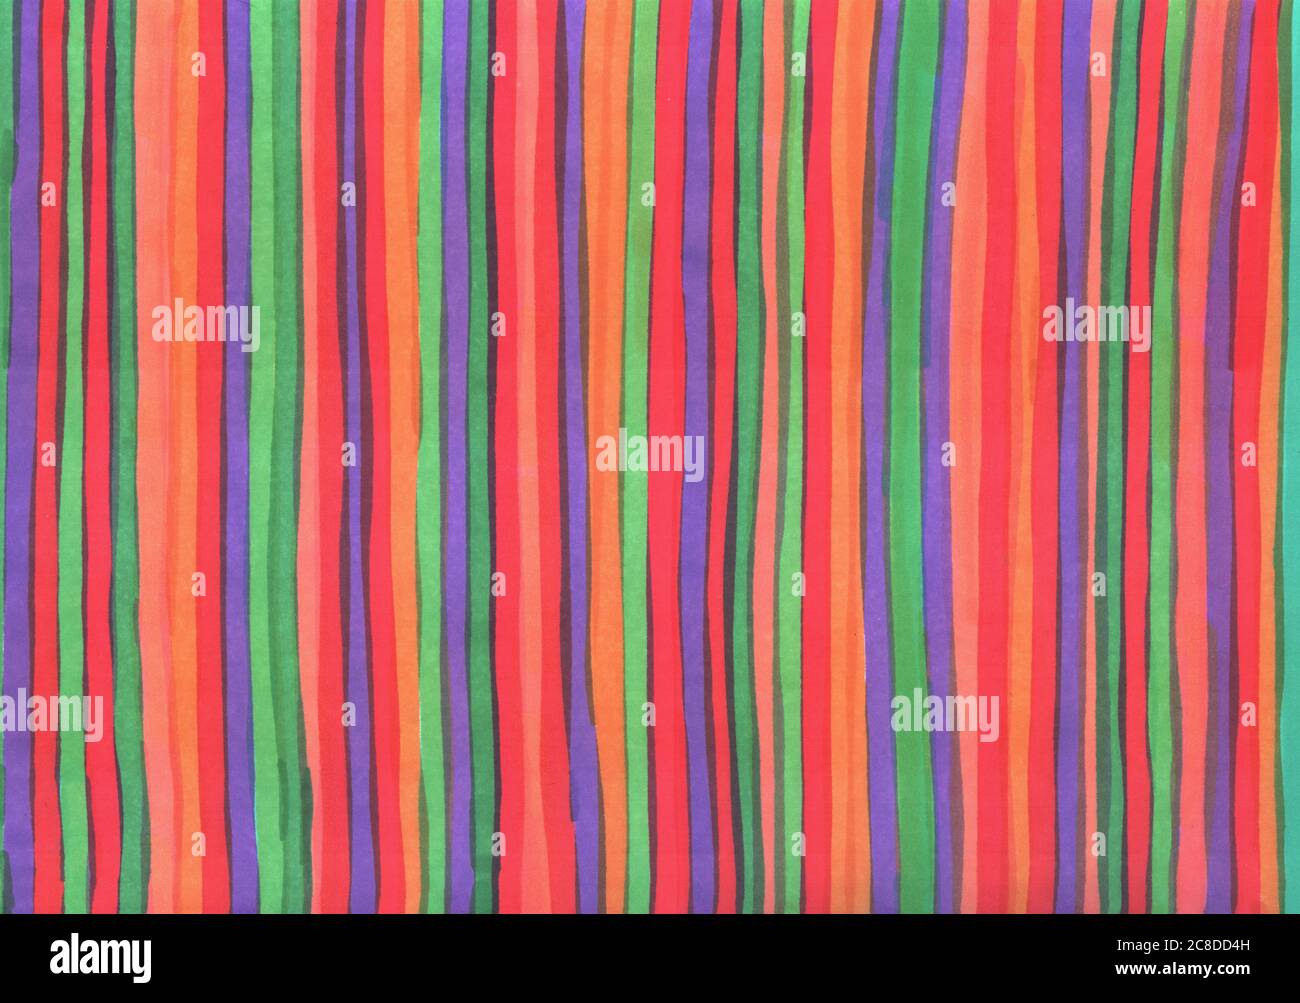 Markermalerei. Mehrfarbige vertikale Streifen. Grunge handgezeichnete Textur für Hintergrund. Rasterdarstellung. Stockfoto